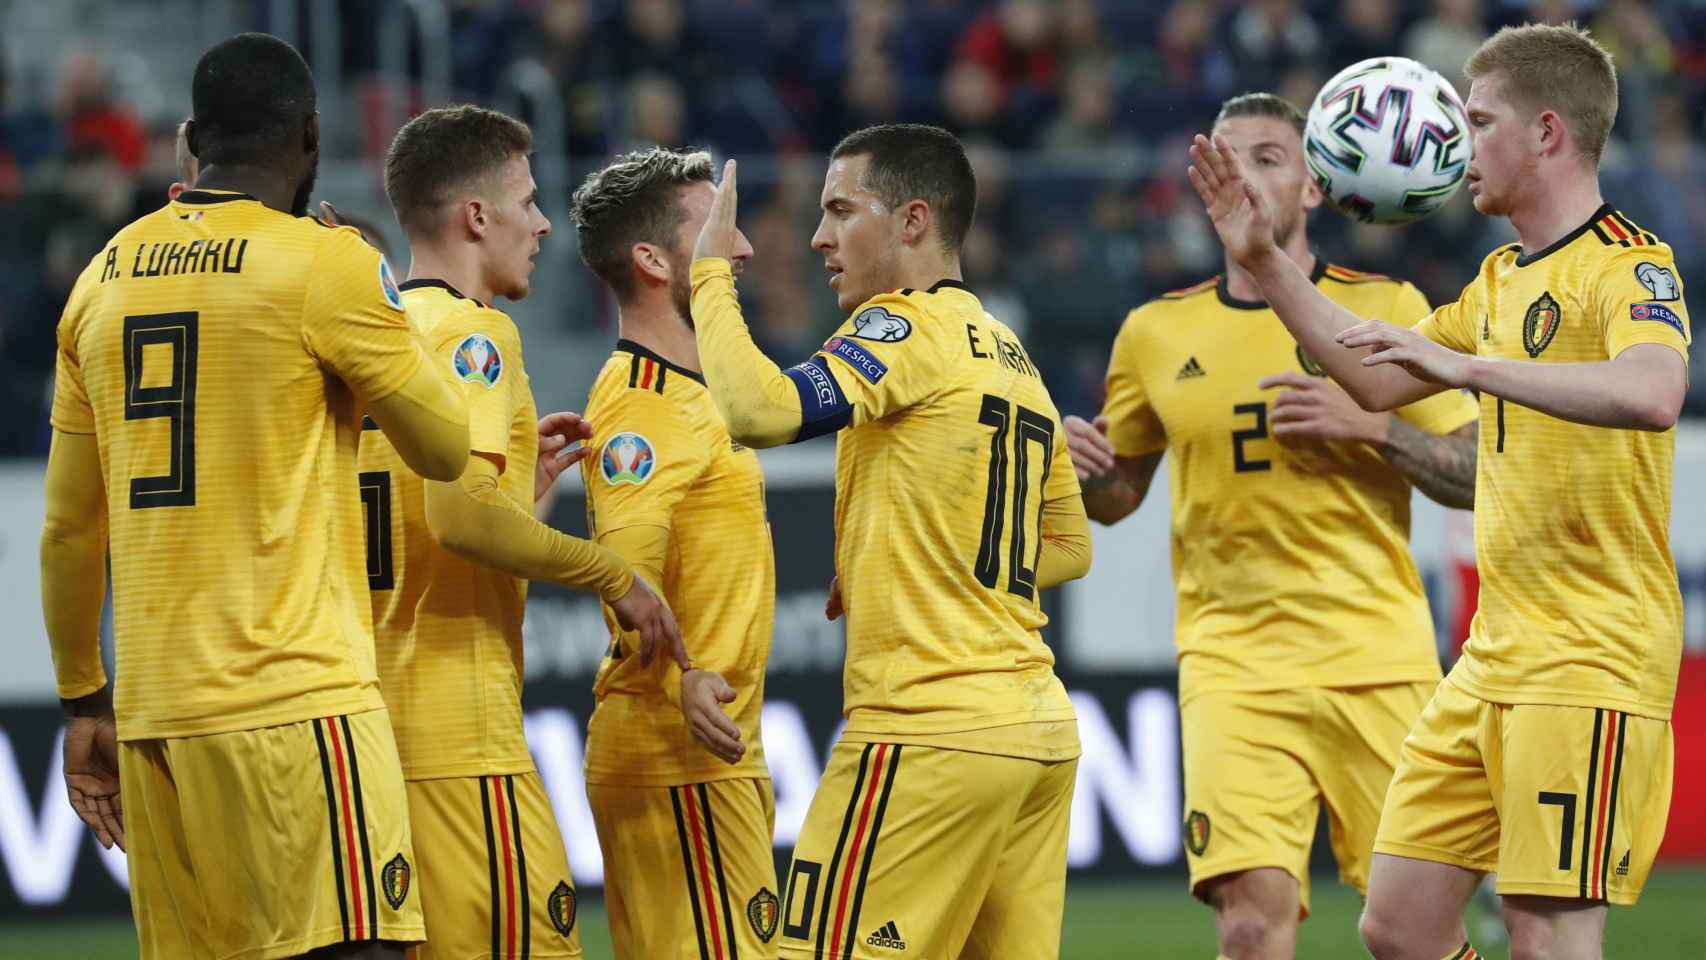 Eden Hazard celebrando un gol de Bélgica contra Rusia / EFE